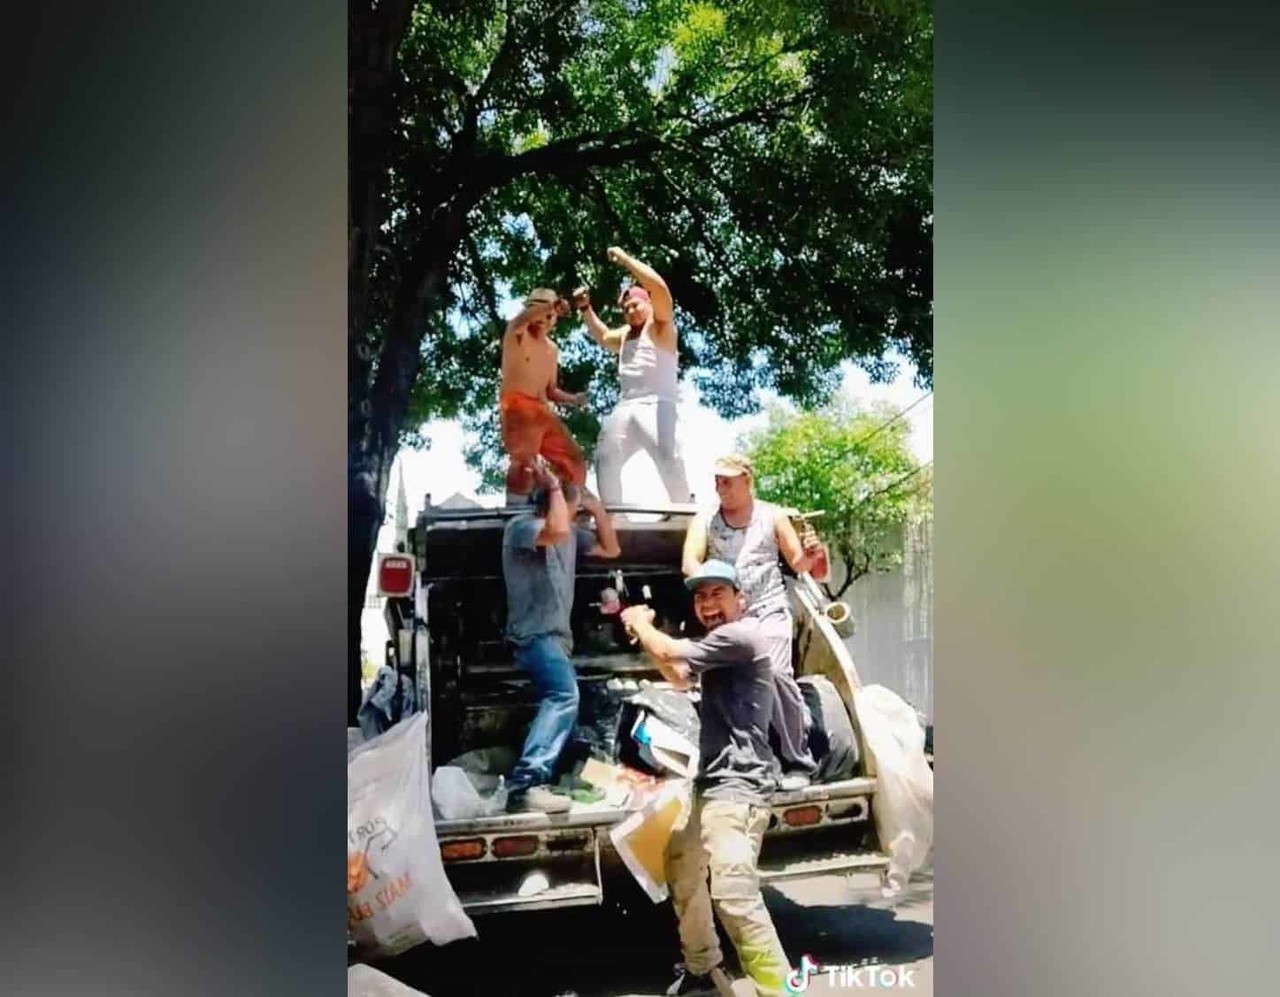 De recolectores de basura a 'Tiktokeros'; la rompen en redes